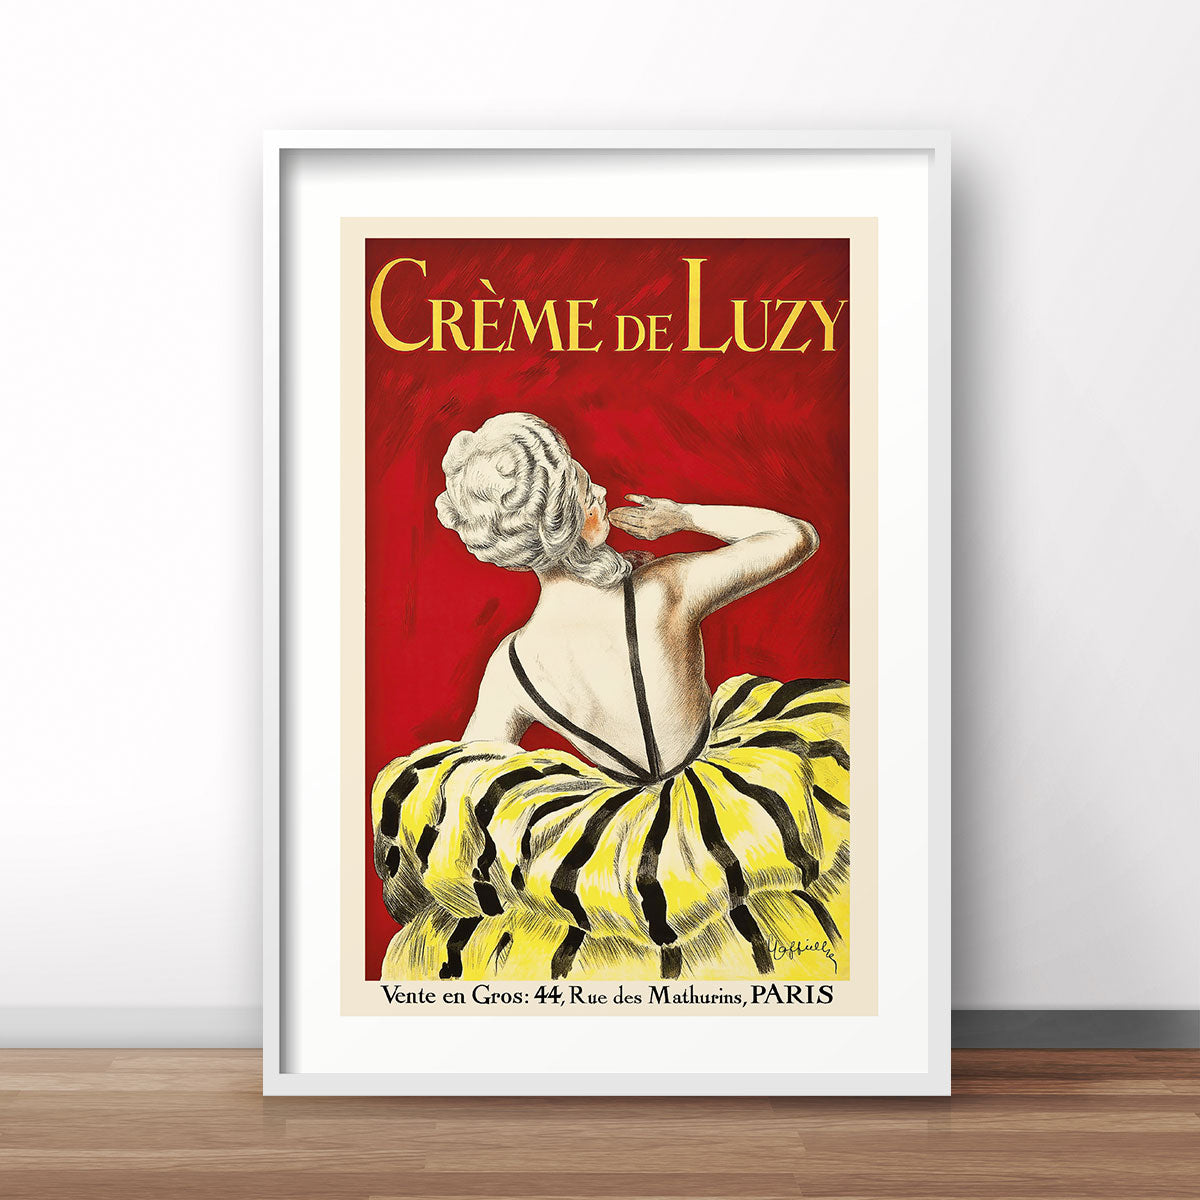 Creme de Luzy Paris vintage retro poster print from Places We Luv